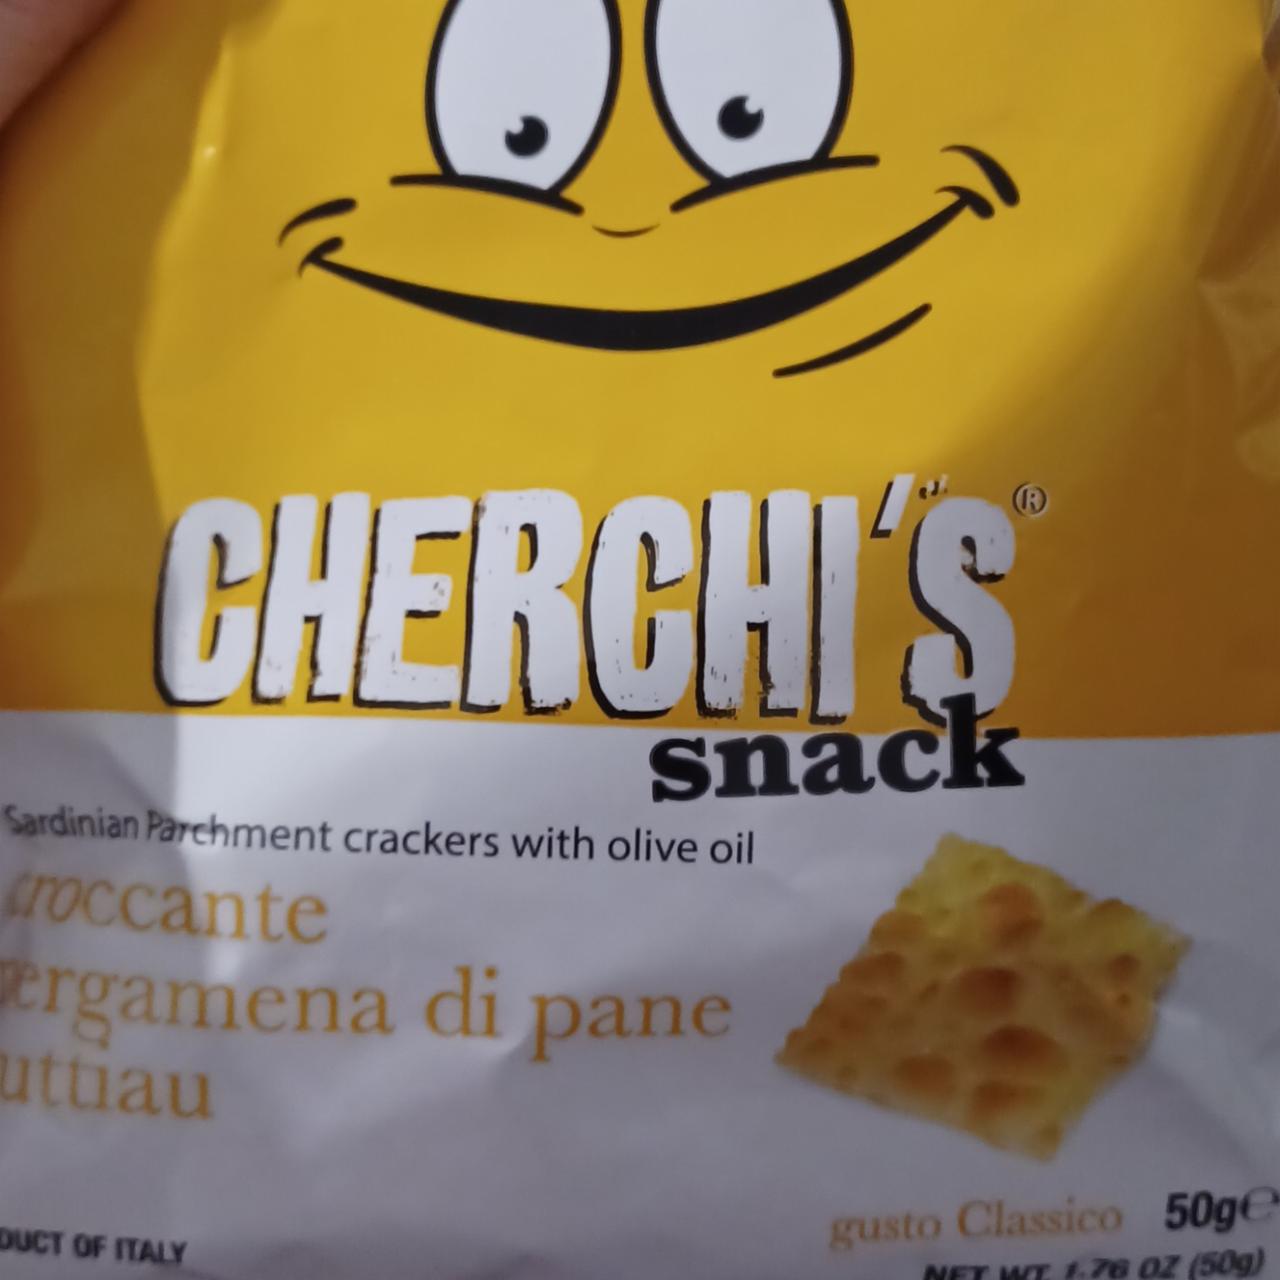 Fotografie - Cherchi's snack